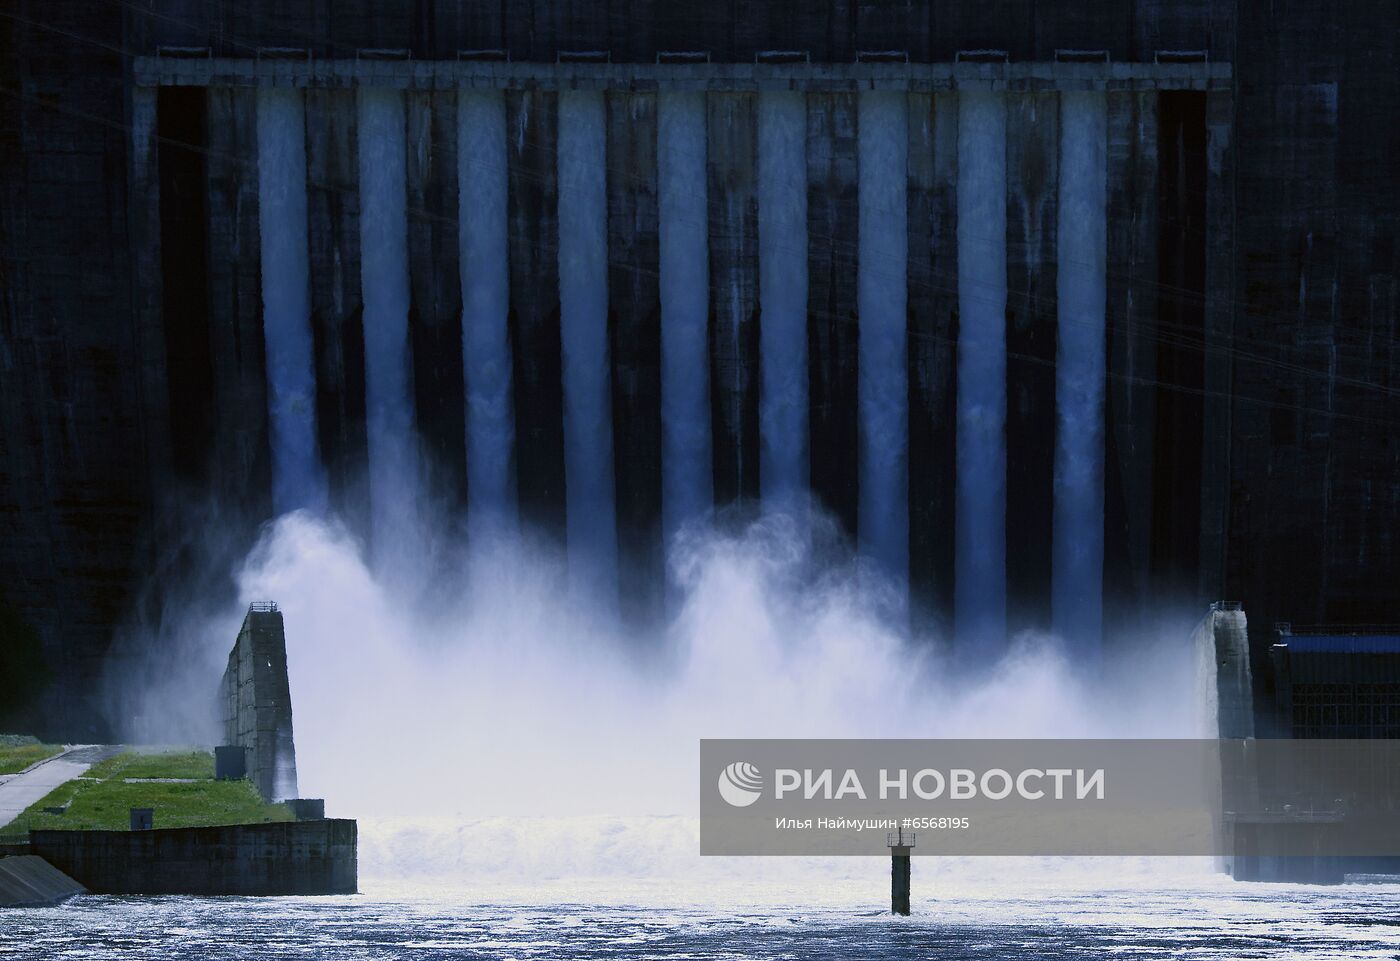 Водосброс на Саяно-Шушенской ГЭС